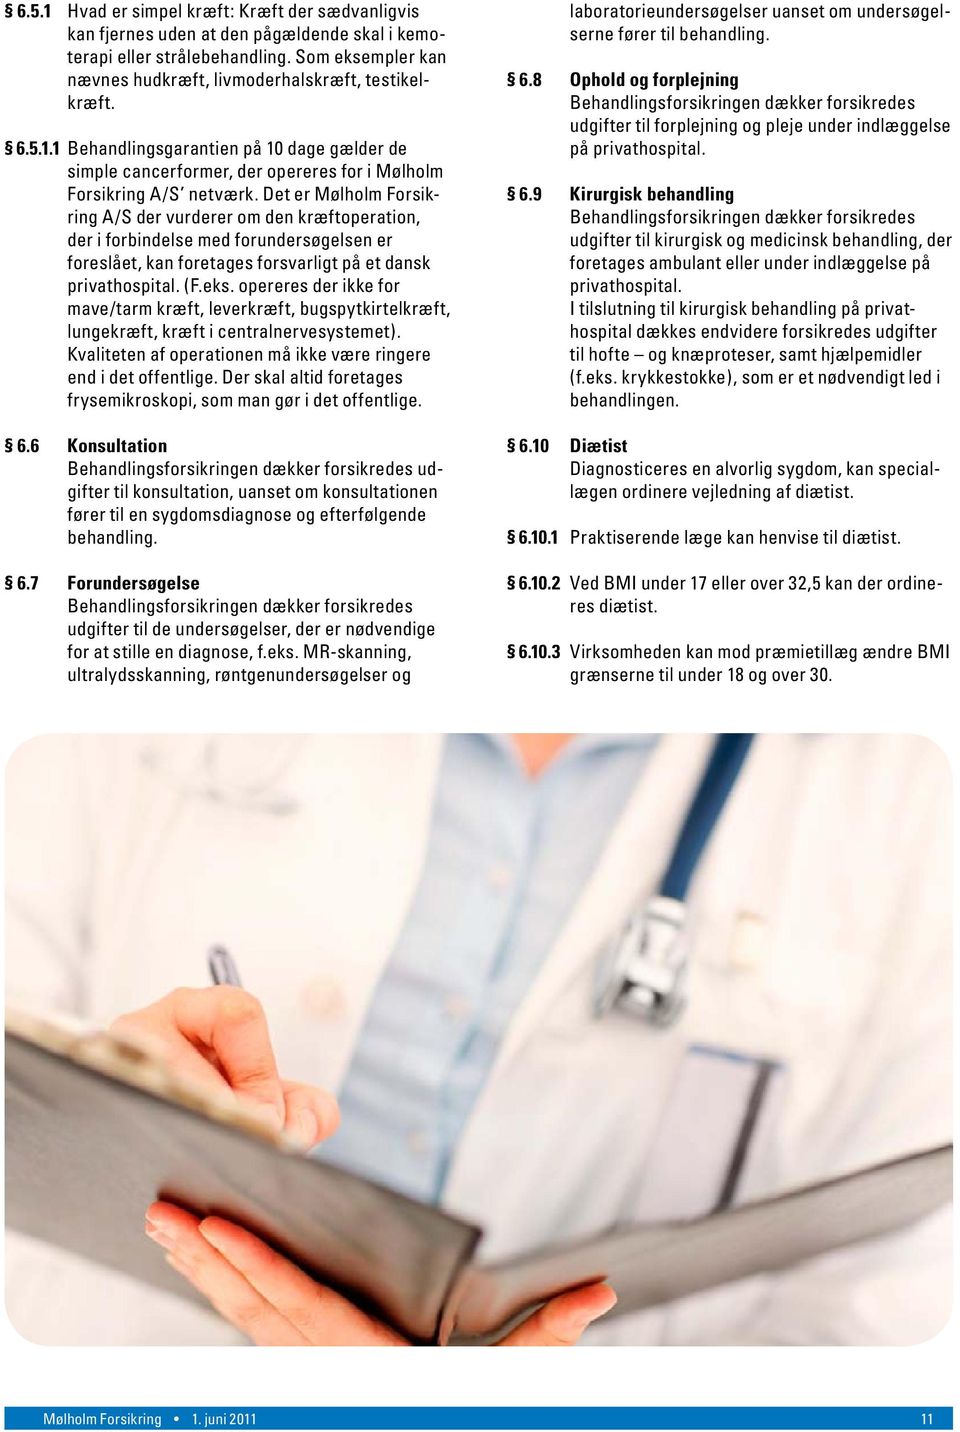 Det er Mølholm Forsikring A/S der vurderer om den kræftoperation, der i forbindelse med forundersøgelsen er foreslået, kan foretages forsvarligt på et dansk privathospital. (F.eks.